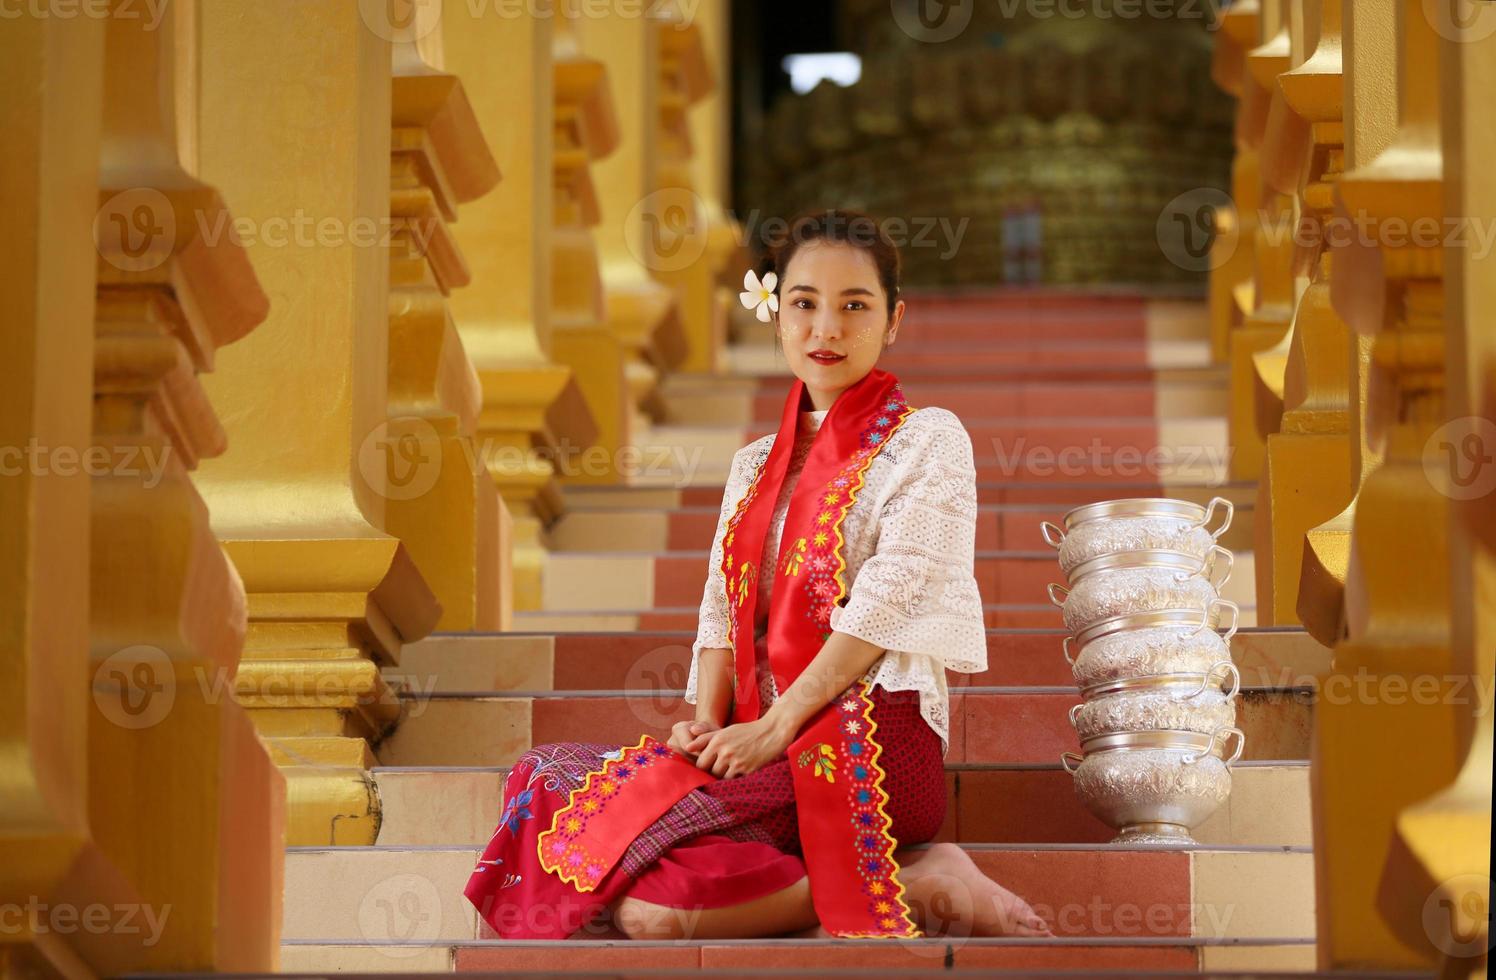 giovane ragazza asiatica in costume tradizionale birmano che tiene una ciotola di riso a portata di mano alla pagoda dorata nel tempio del myanmar. donne del Myanmar che tengono fiori con abiti tradizionali birmani che visitano un tempio buddista foto